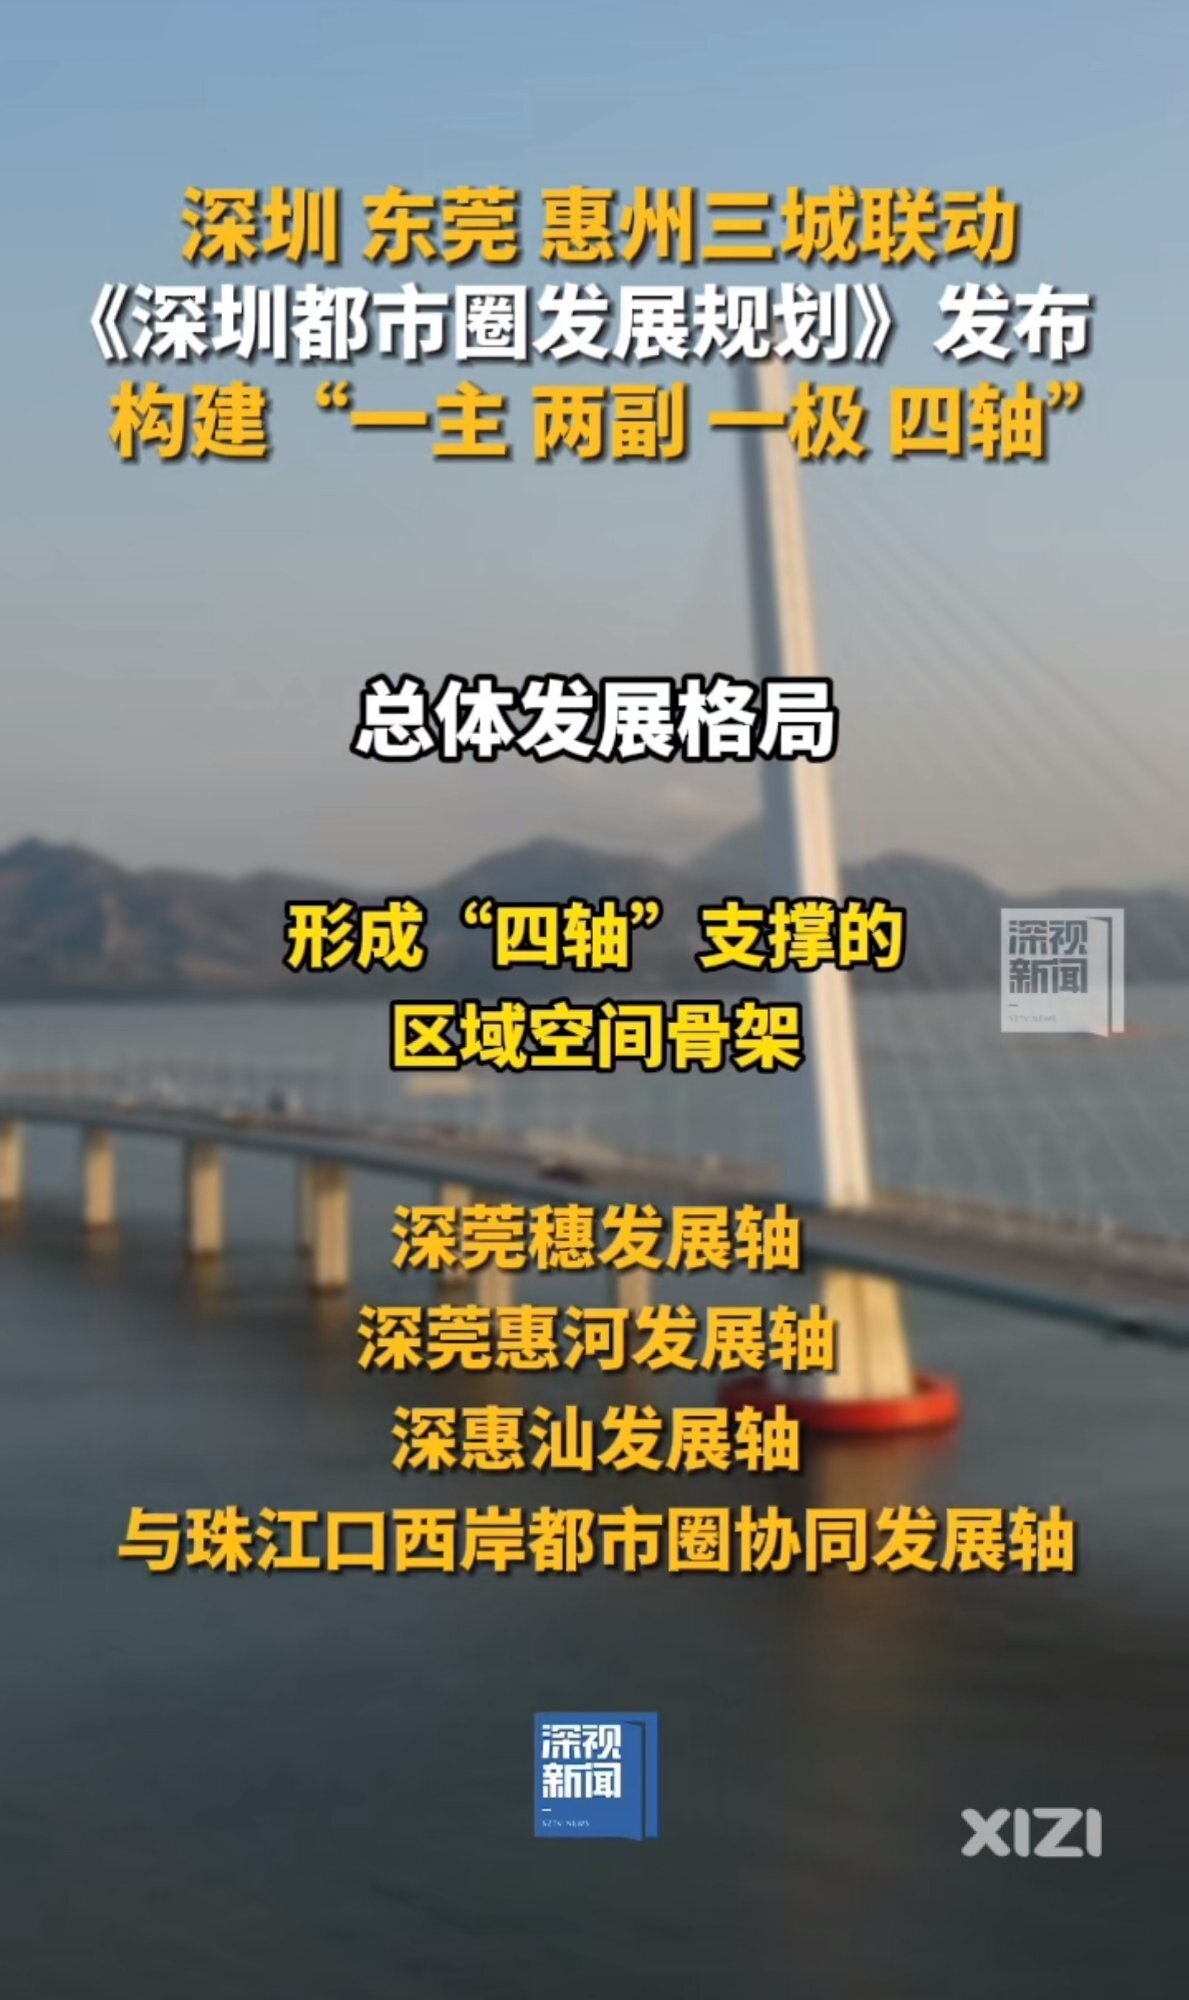 惠州全域加入深圳都市圈